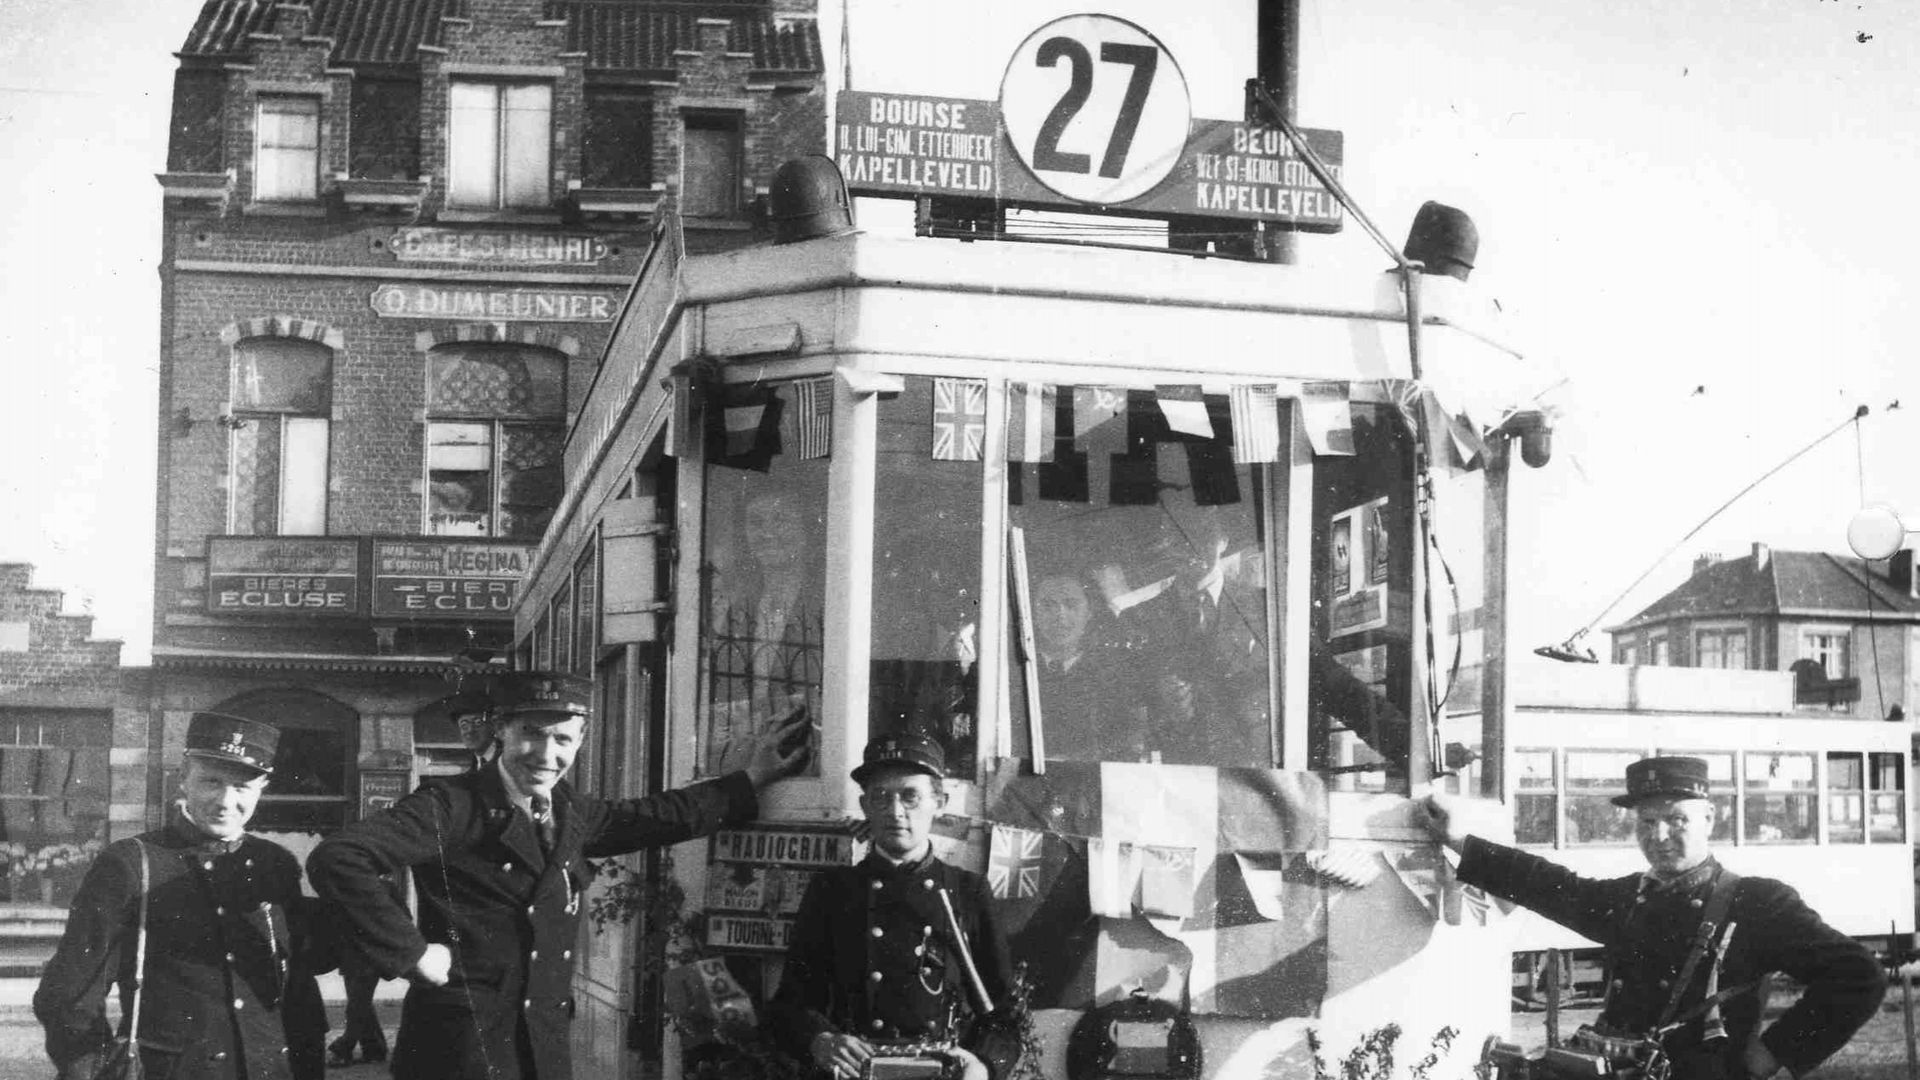 Le tram 27 en 1945